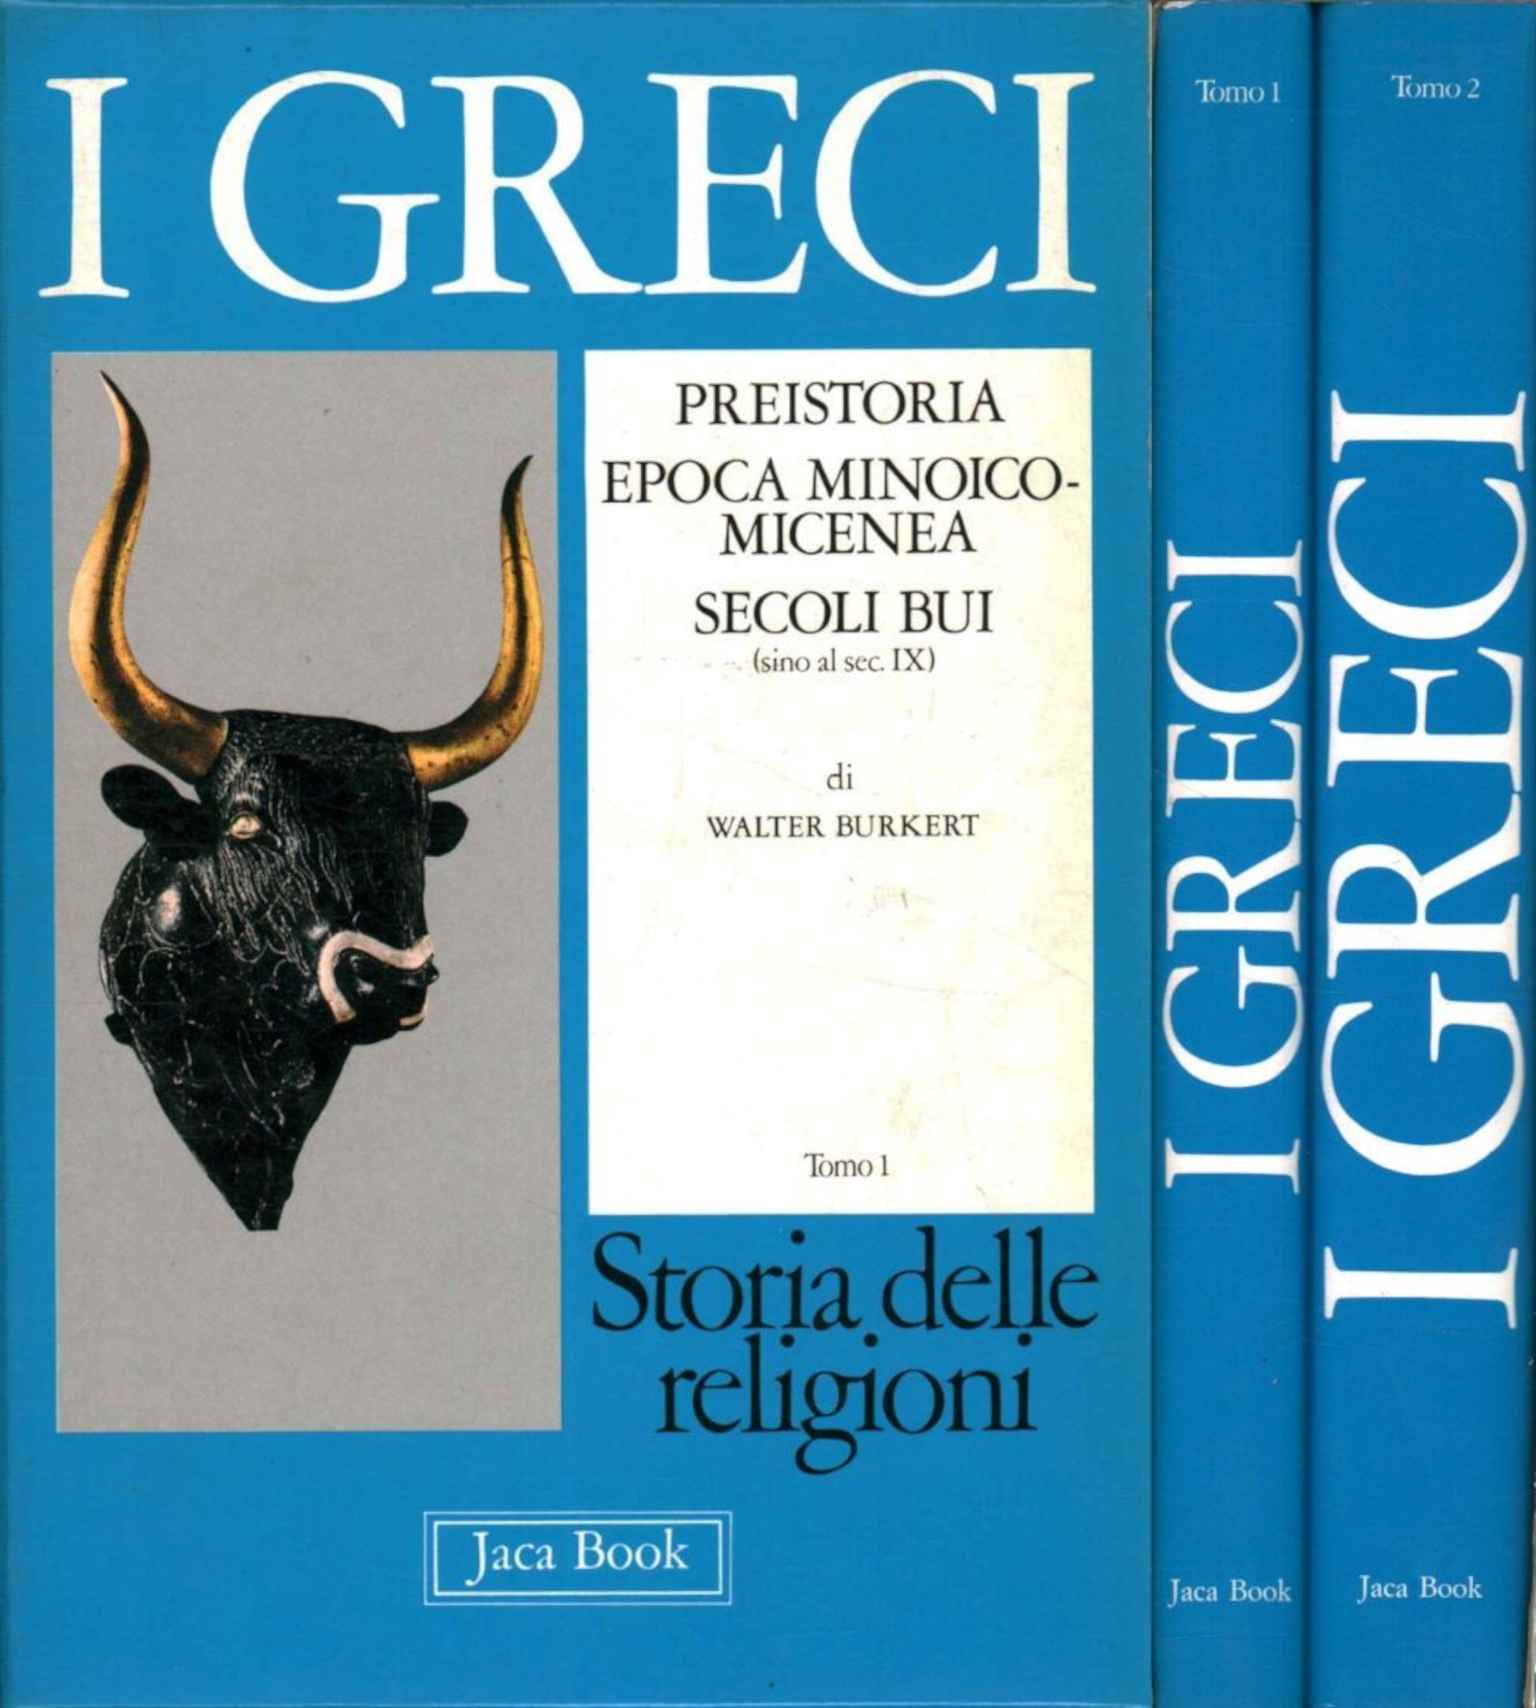 Les Grecs (2 volumes)